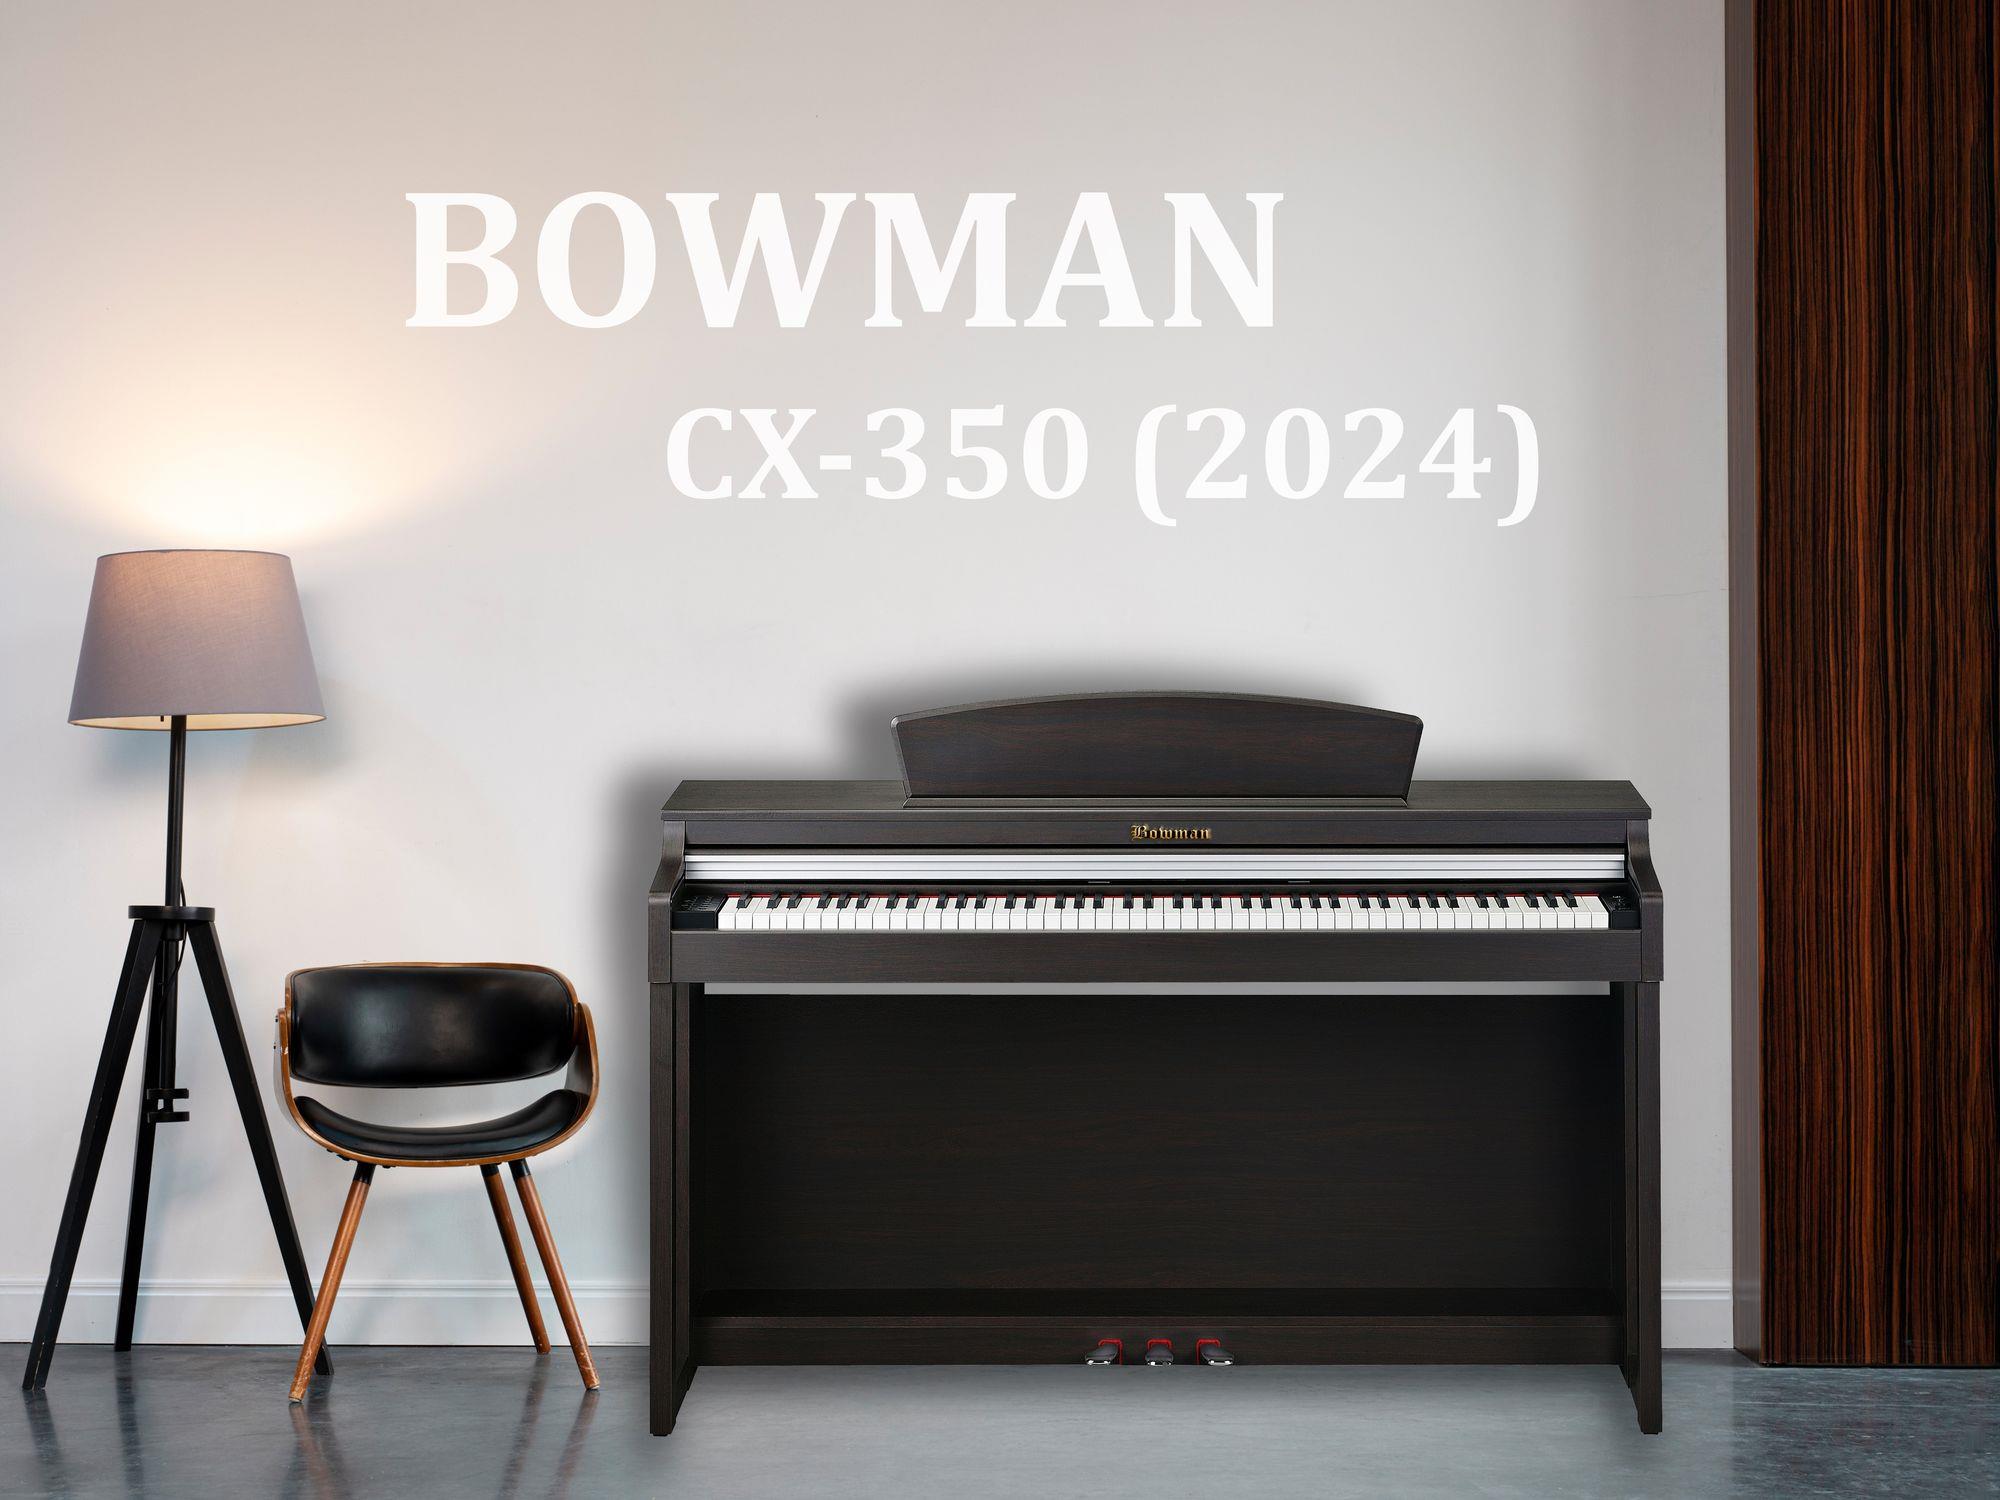 BOWMAN CX-350 SR (2024)